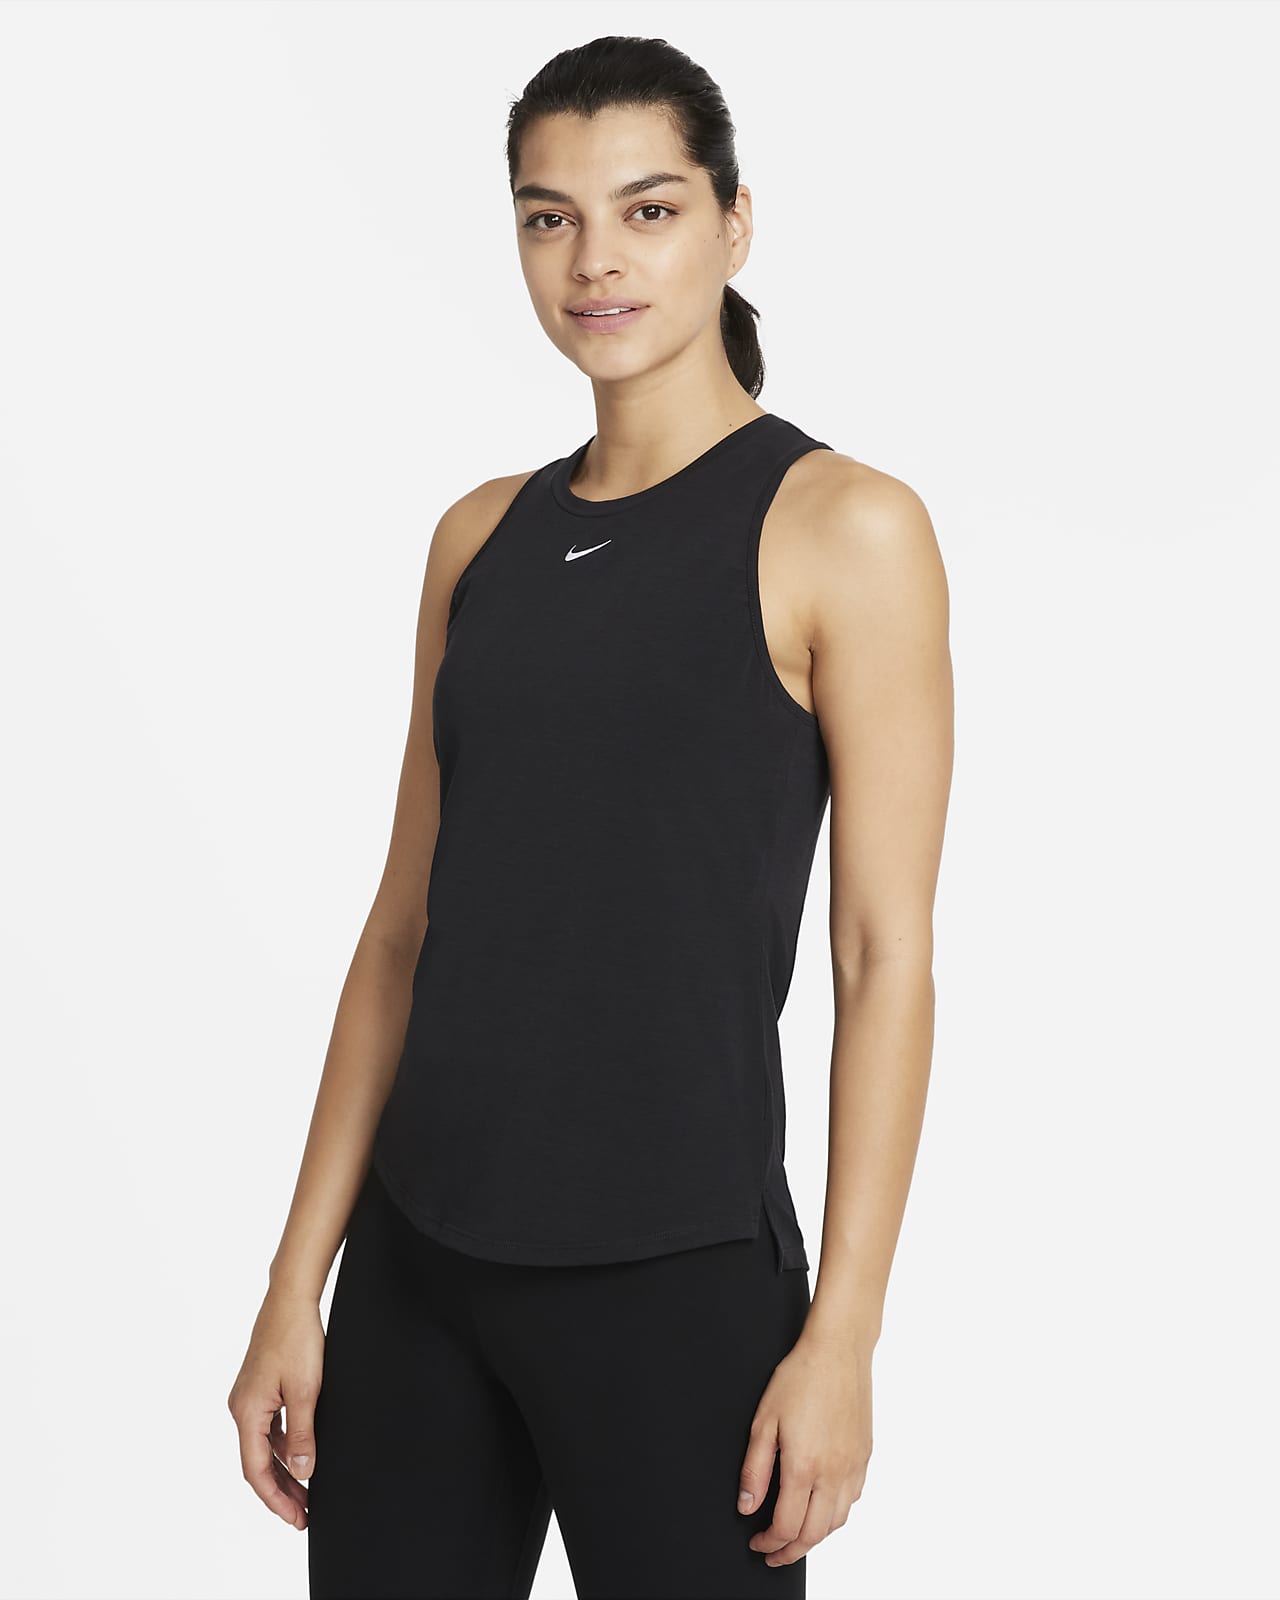 Γυναικείο φανελάκι με κανονική εφαρμογή Nike Dri-FIT One Luxe